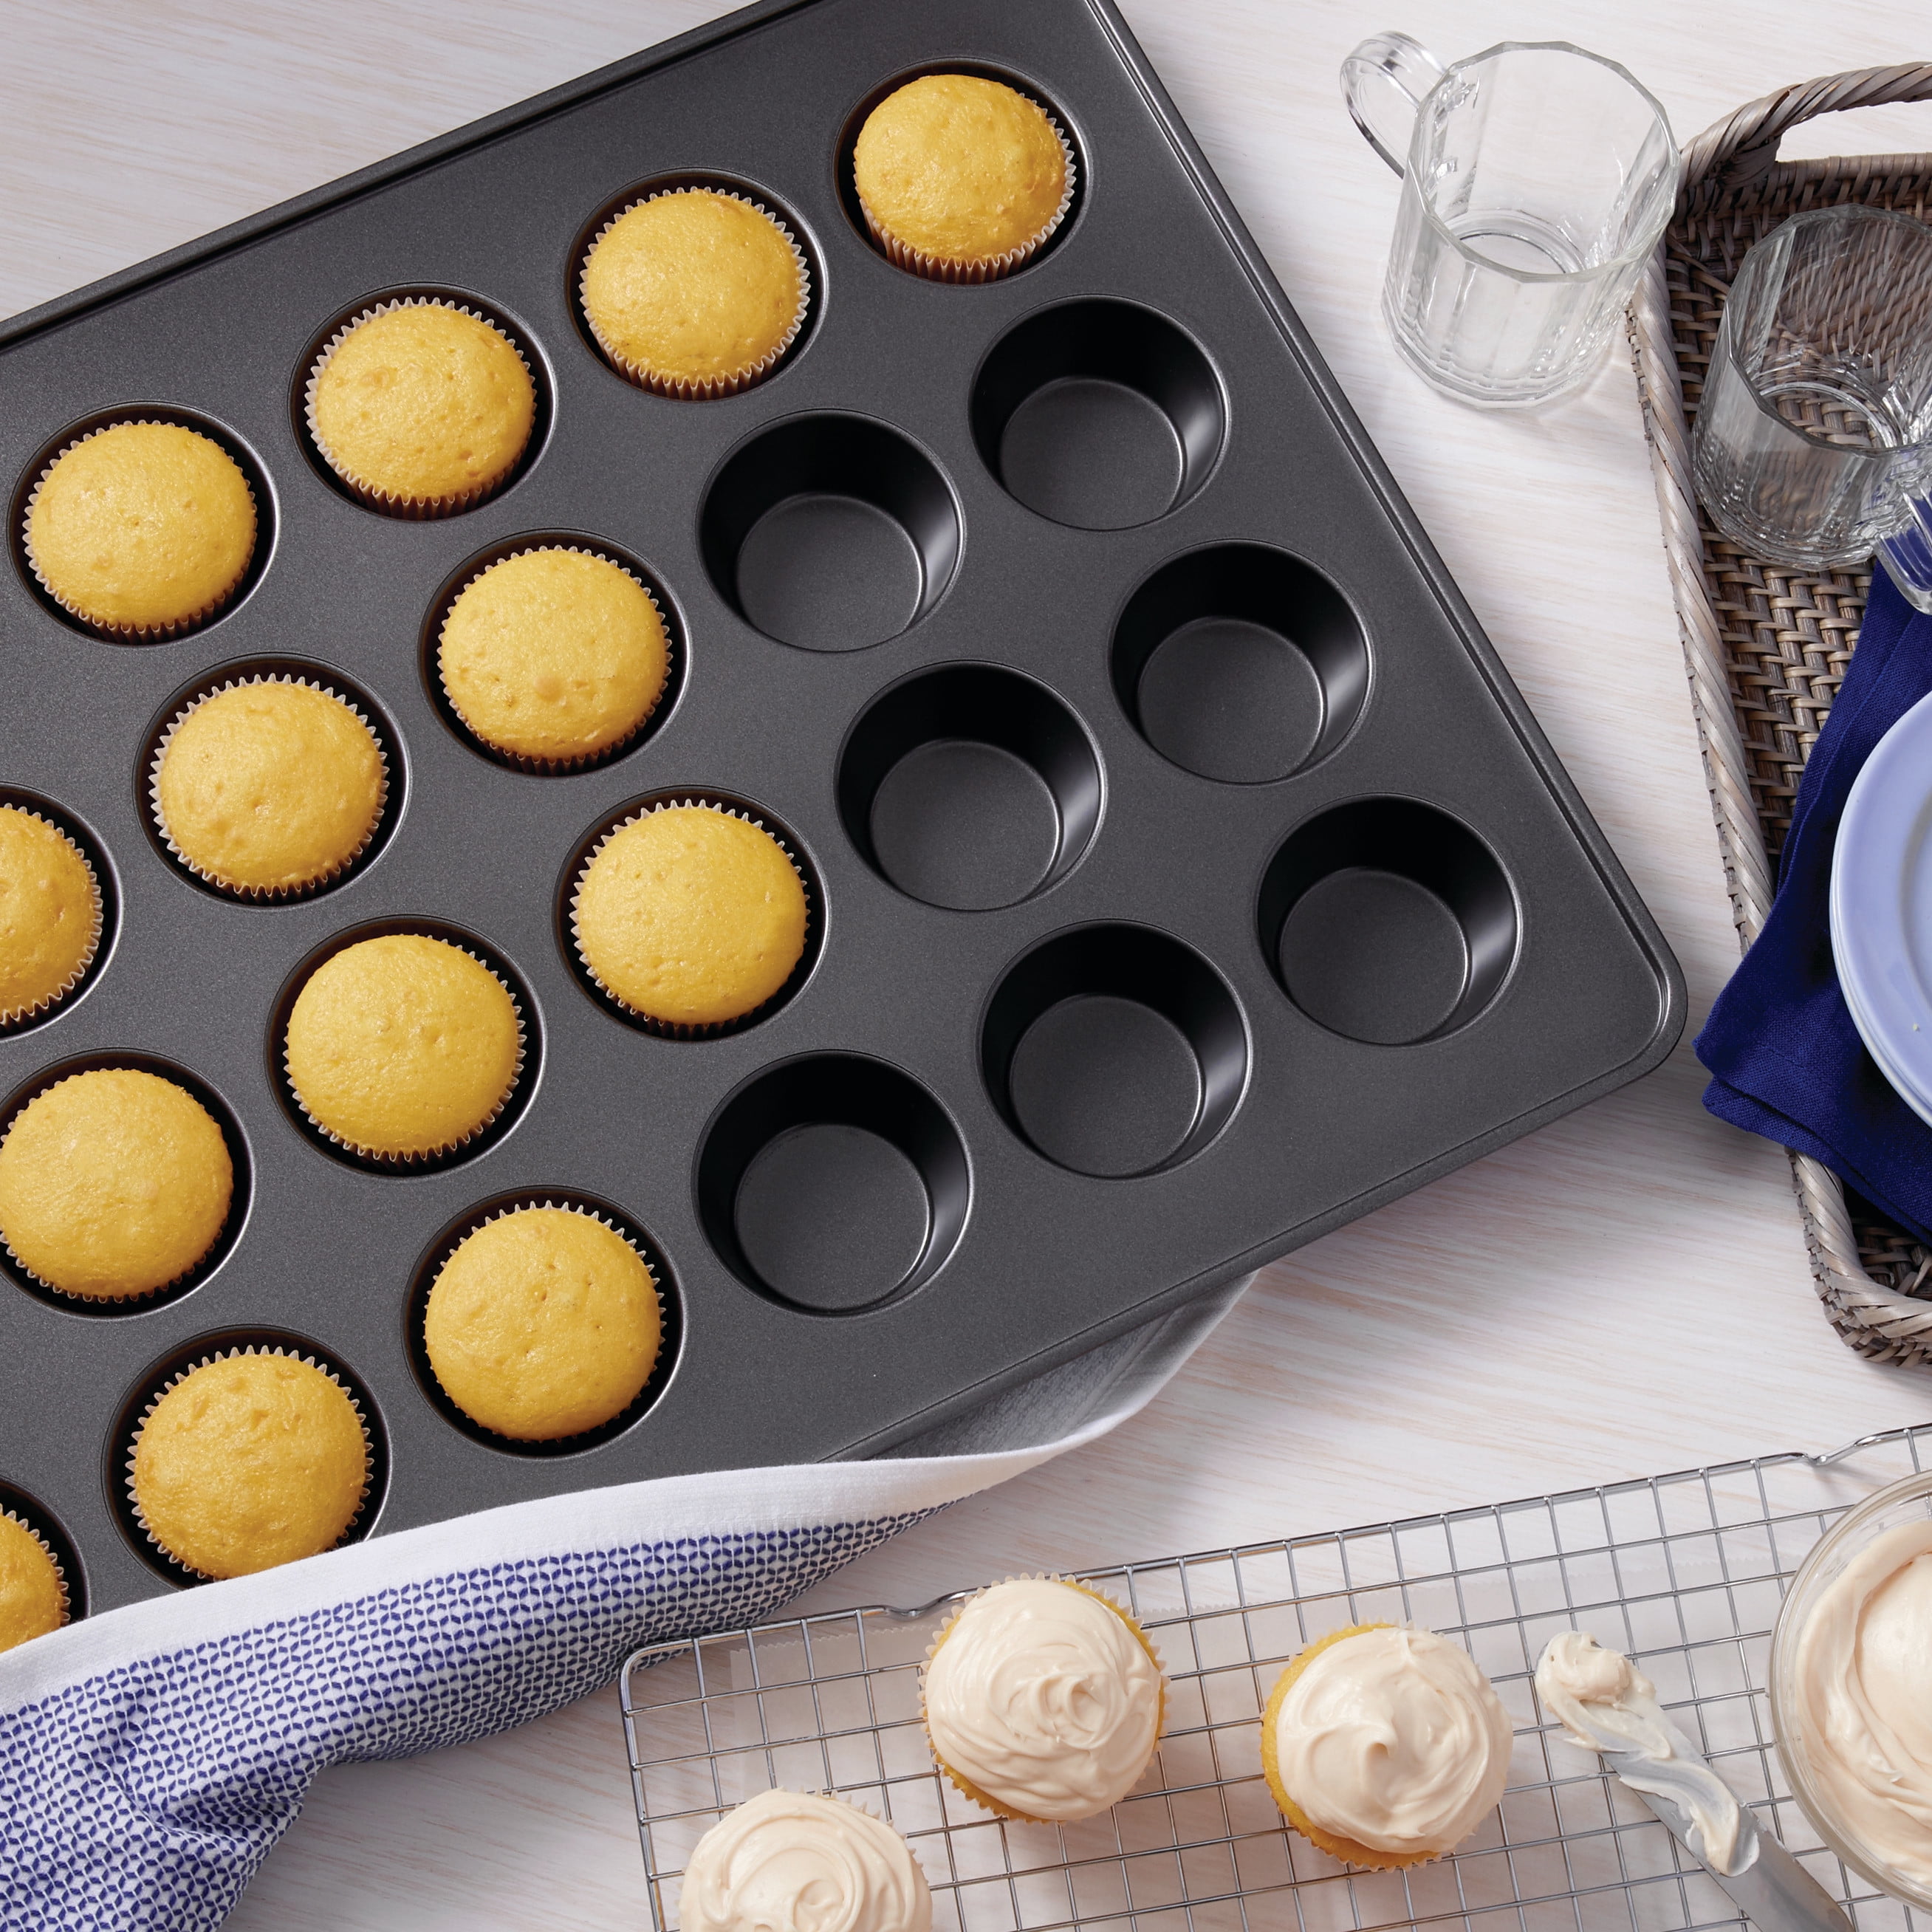 Wilton Ultra Bake Pro 12 Cavity Muffin Pan - Gray